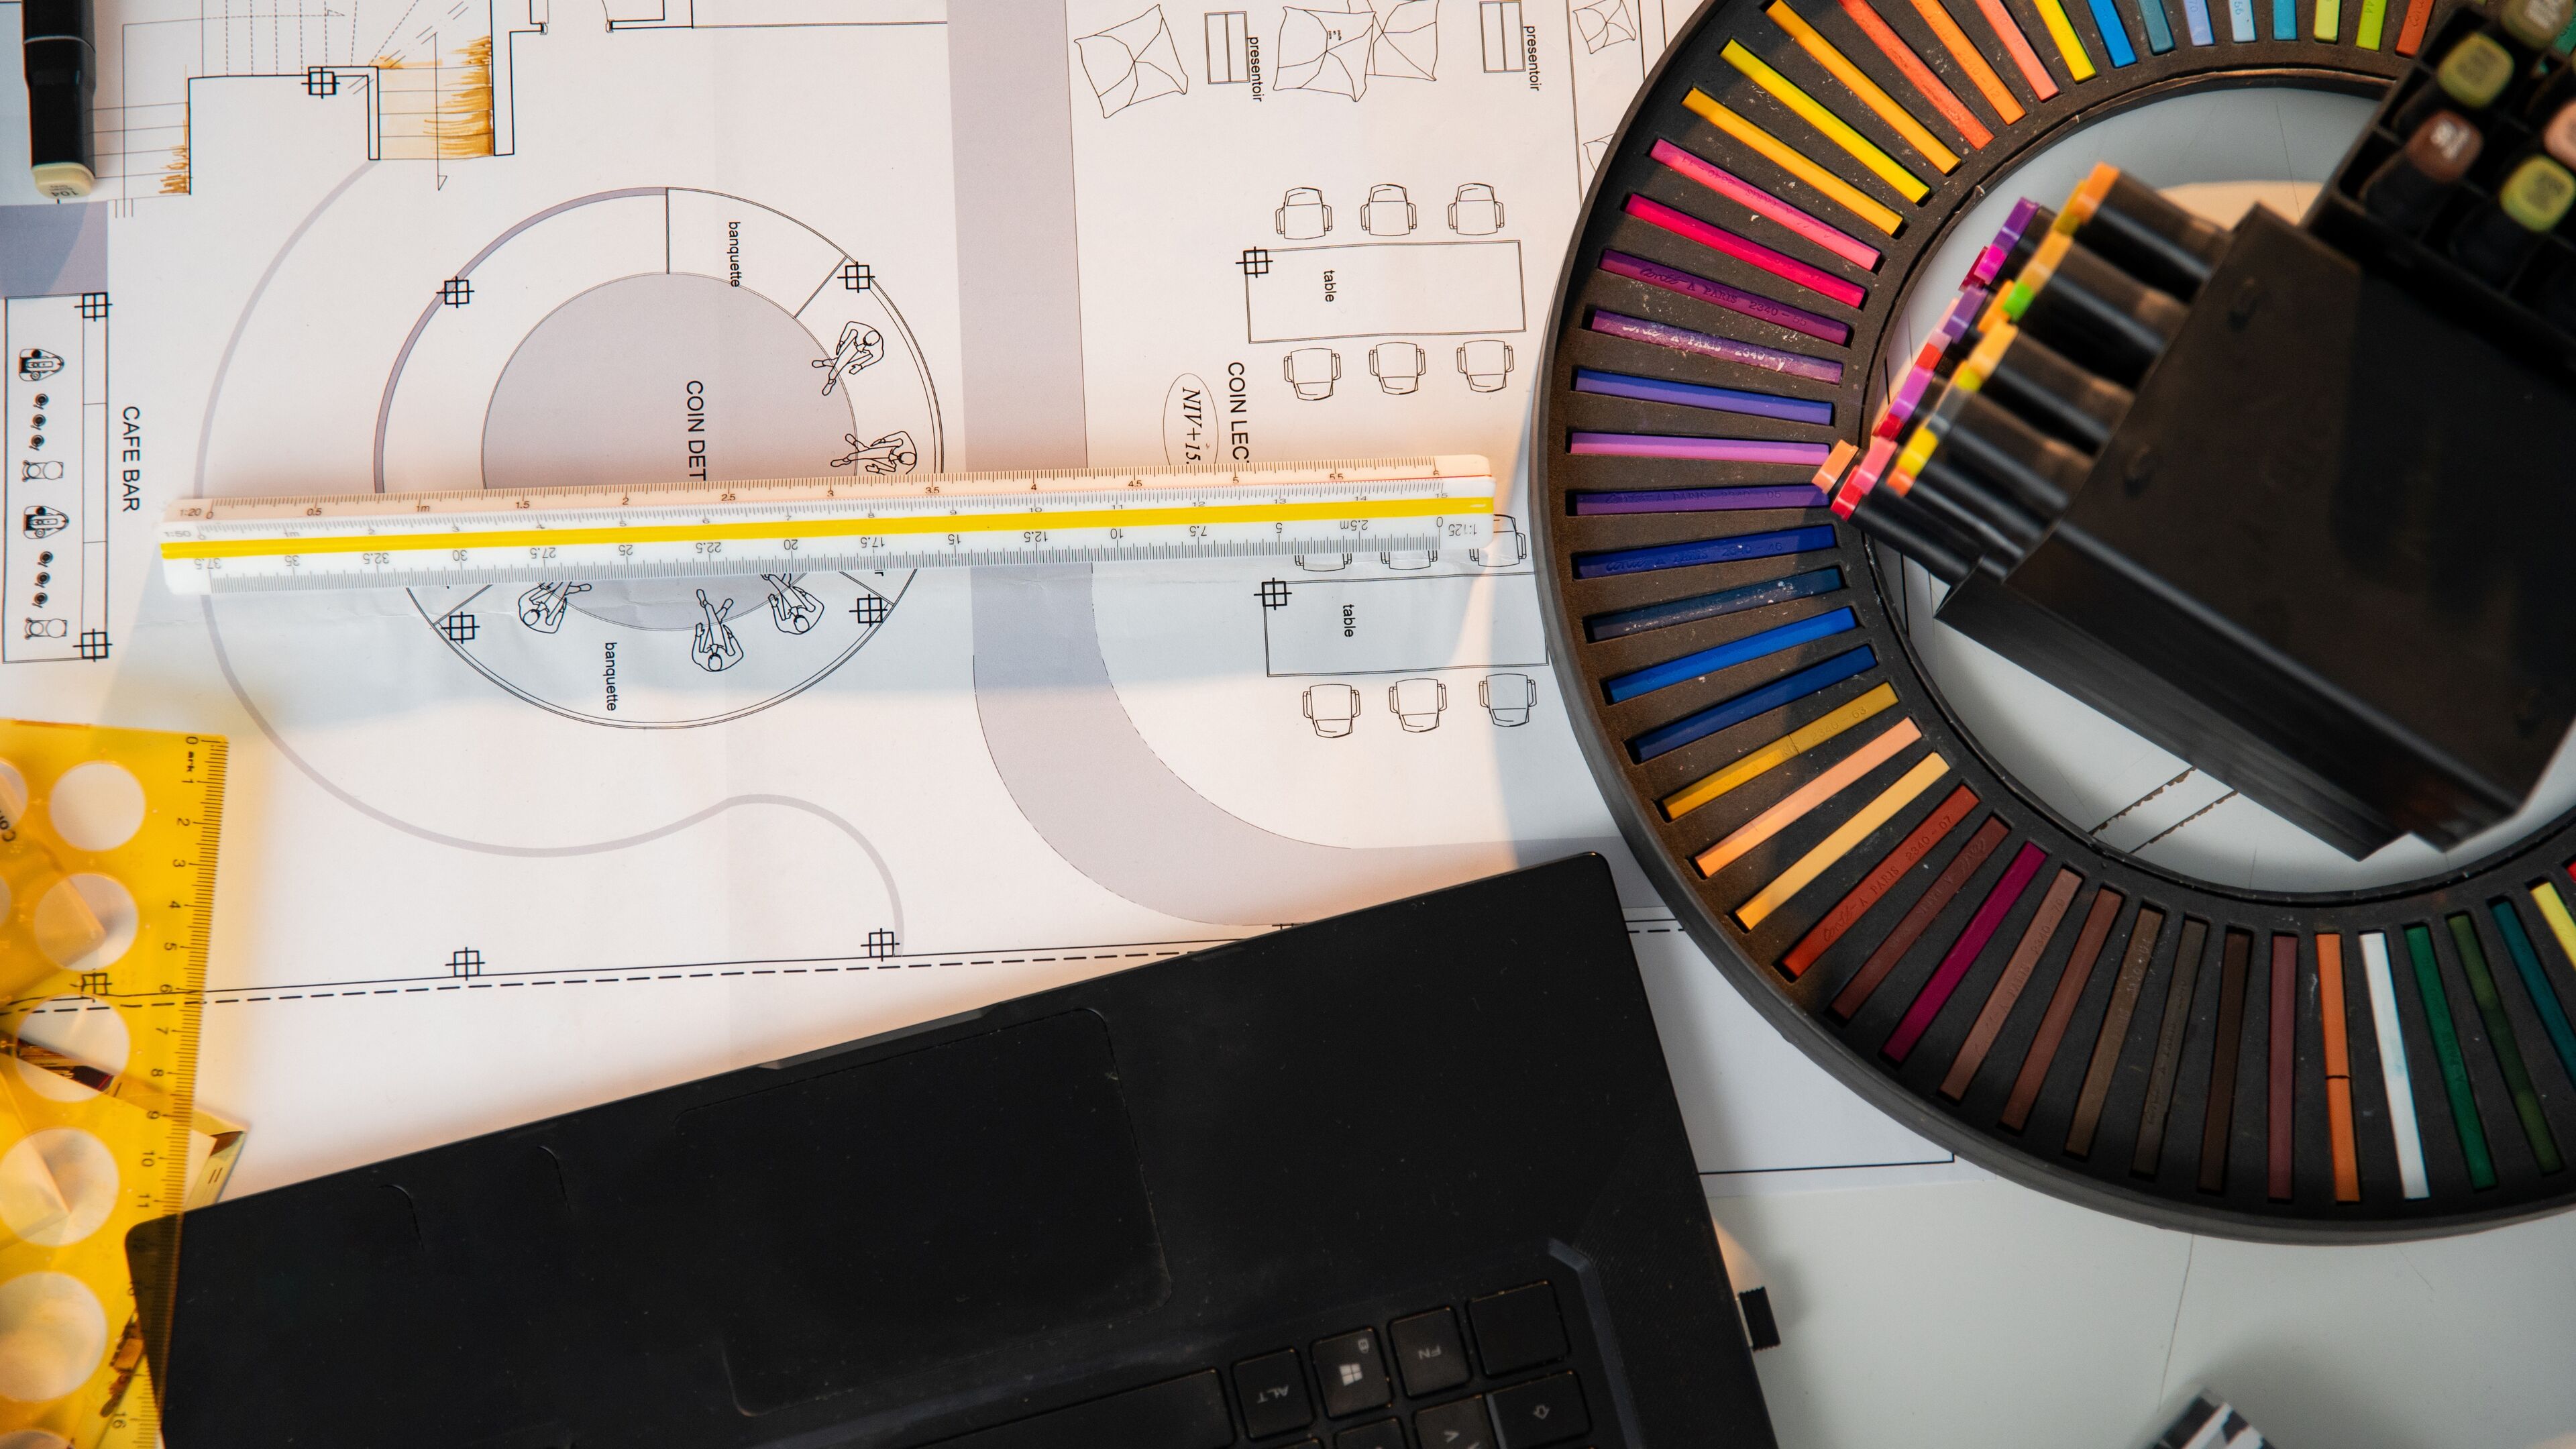 Vue rapprochée d'un équipement de dessin technique professionnel, comprenant une règle, un rapporteur et des plans architecturaux, à côté d'un étui circulaire de crayons de couleur éclatants.